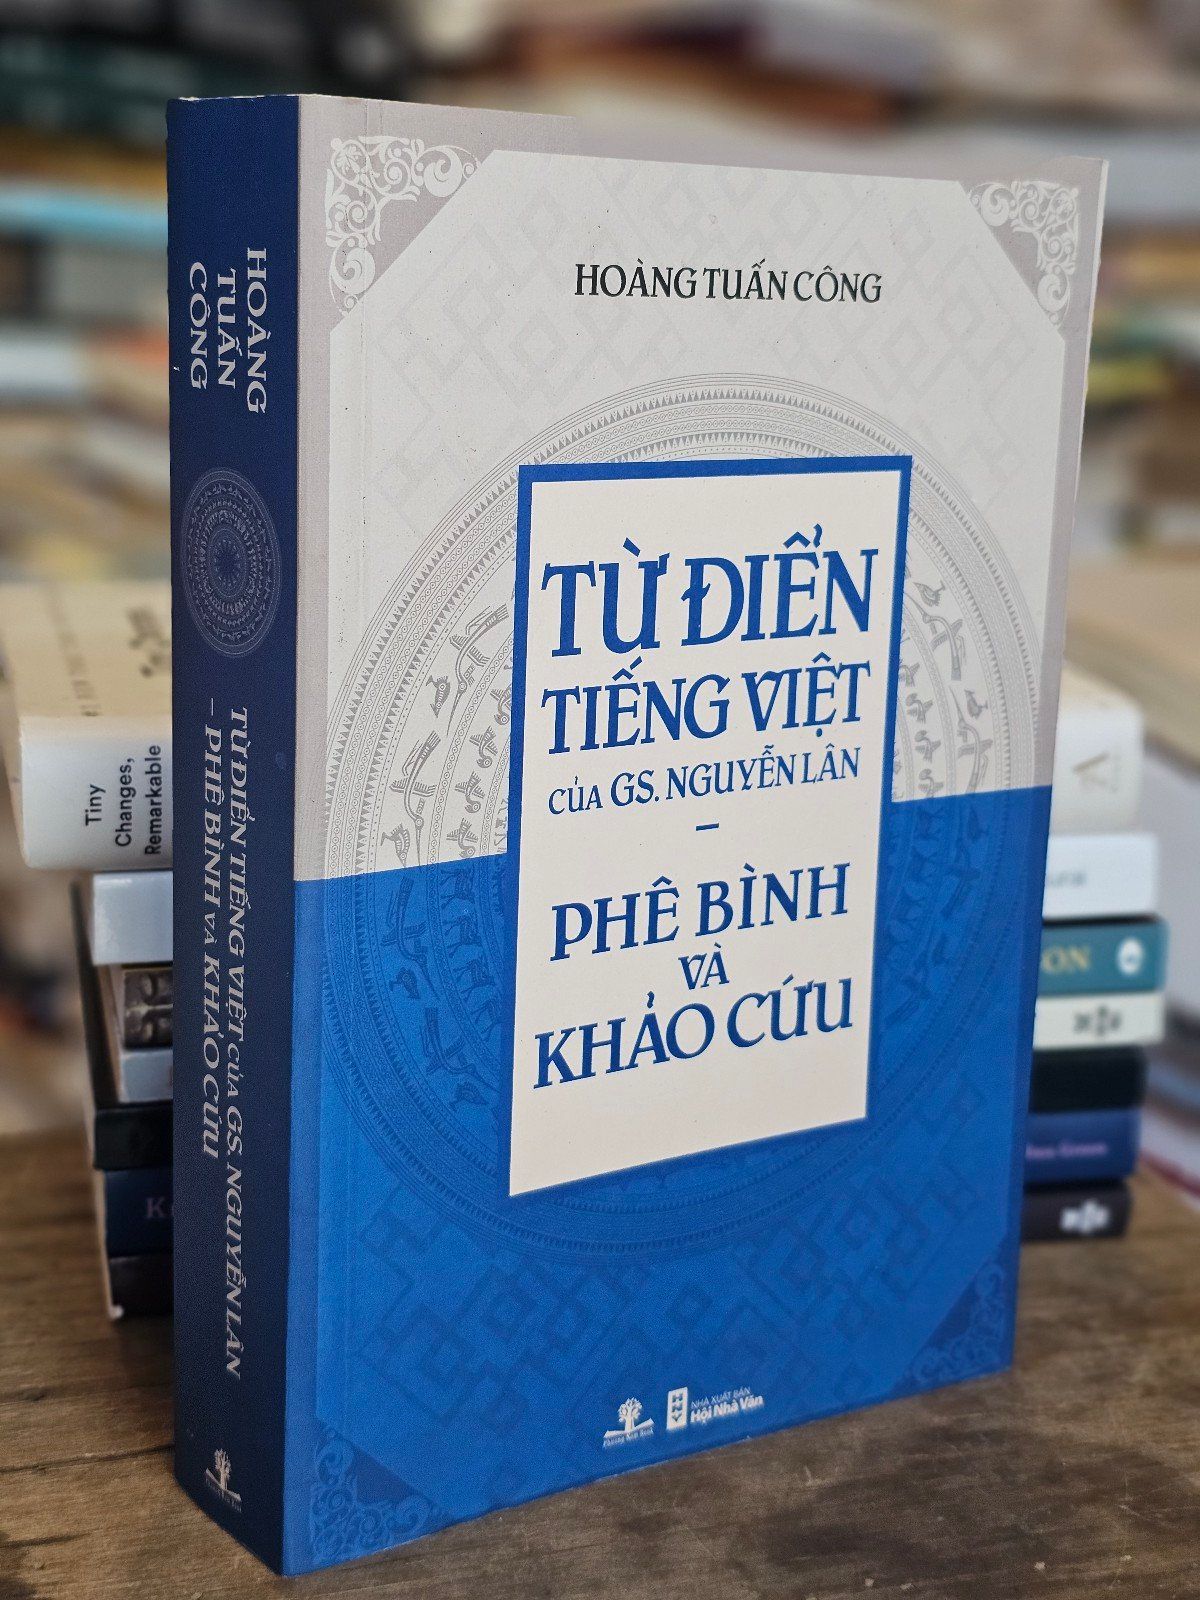  Từ điển Tiếng Việt của Gs Nguyễn Lân - Phê Bình và Khảo Cứu | Hoàng Tuấn Công 